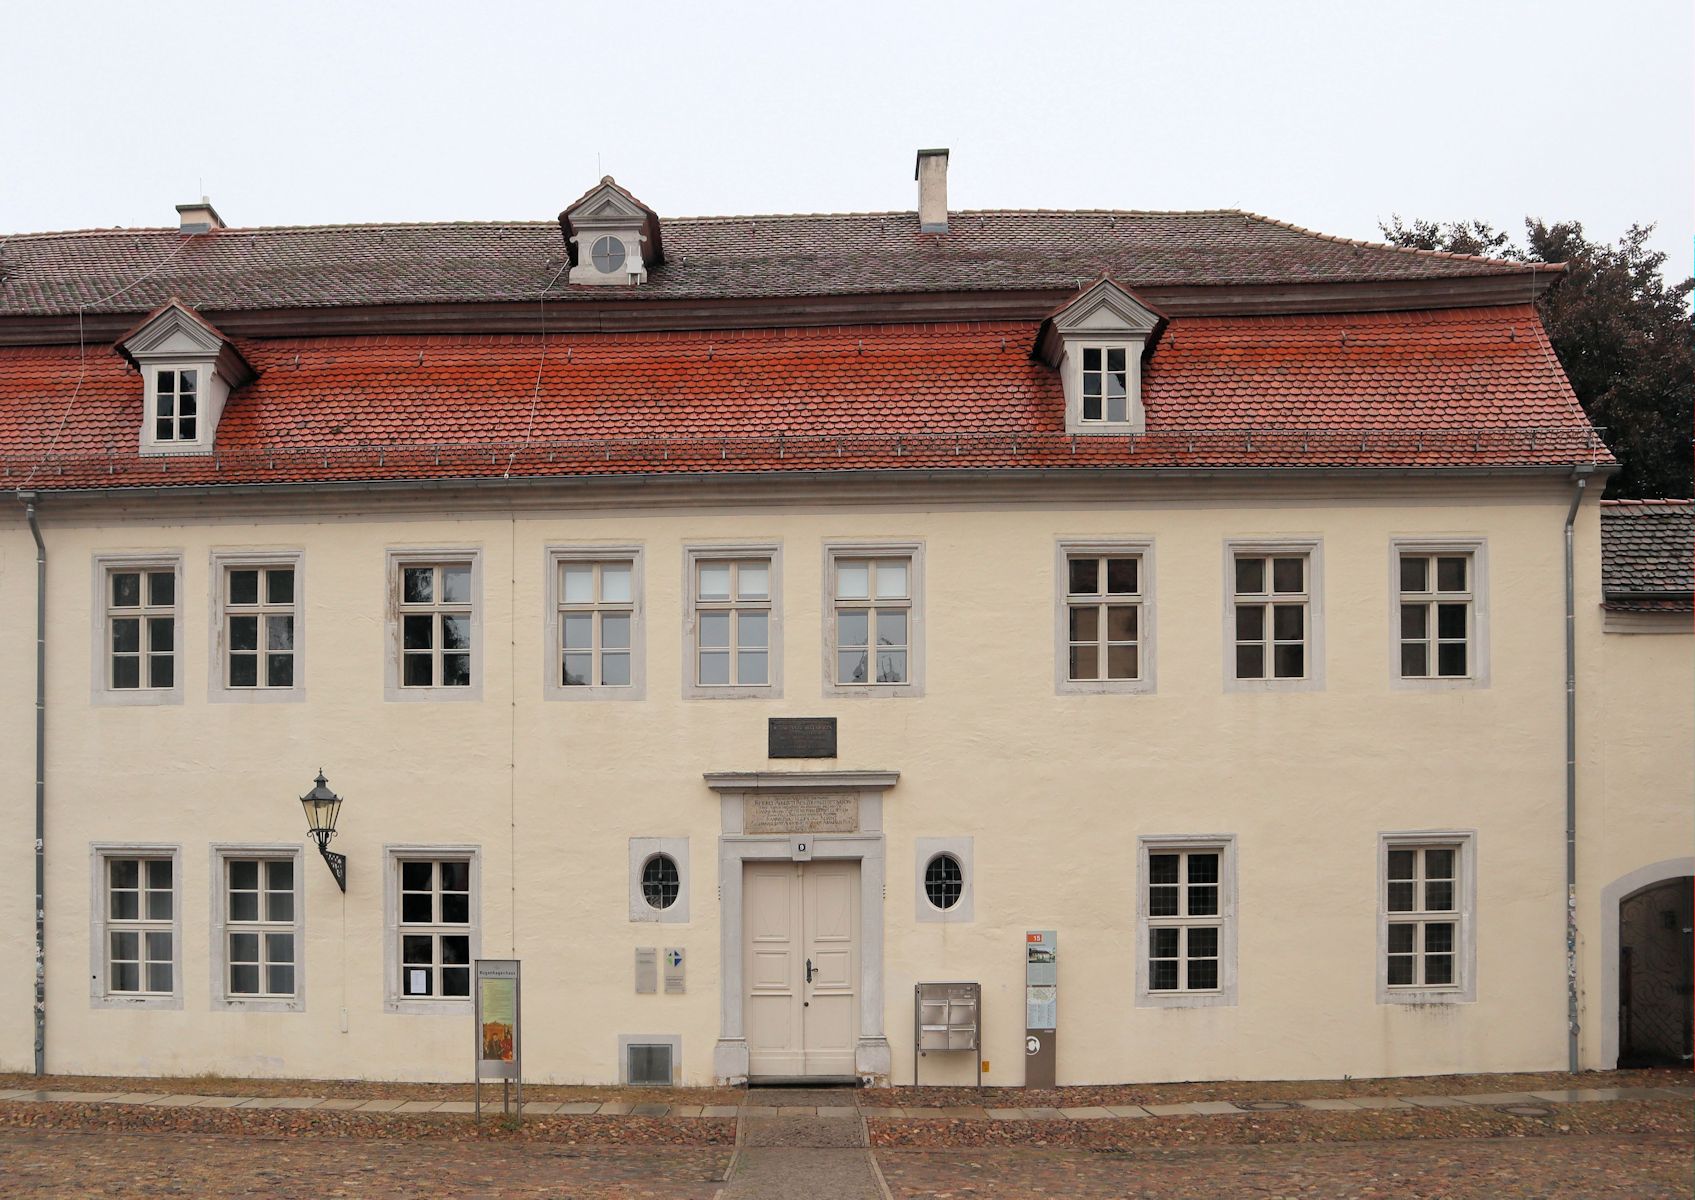 Bugenhagens Haus in Wittenberg, seit 1997 Gemeindehaus der Kirchengemeinde